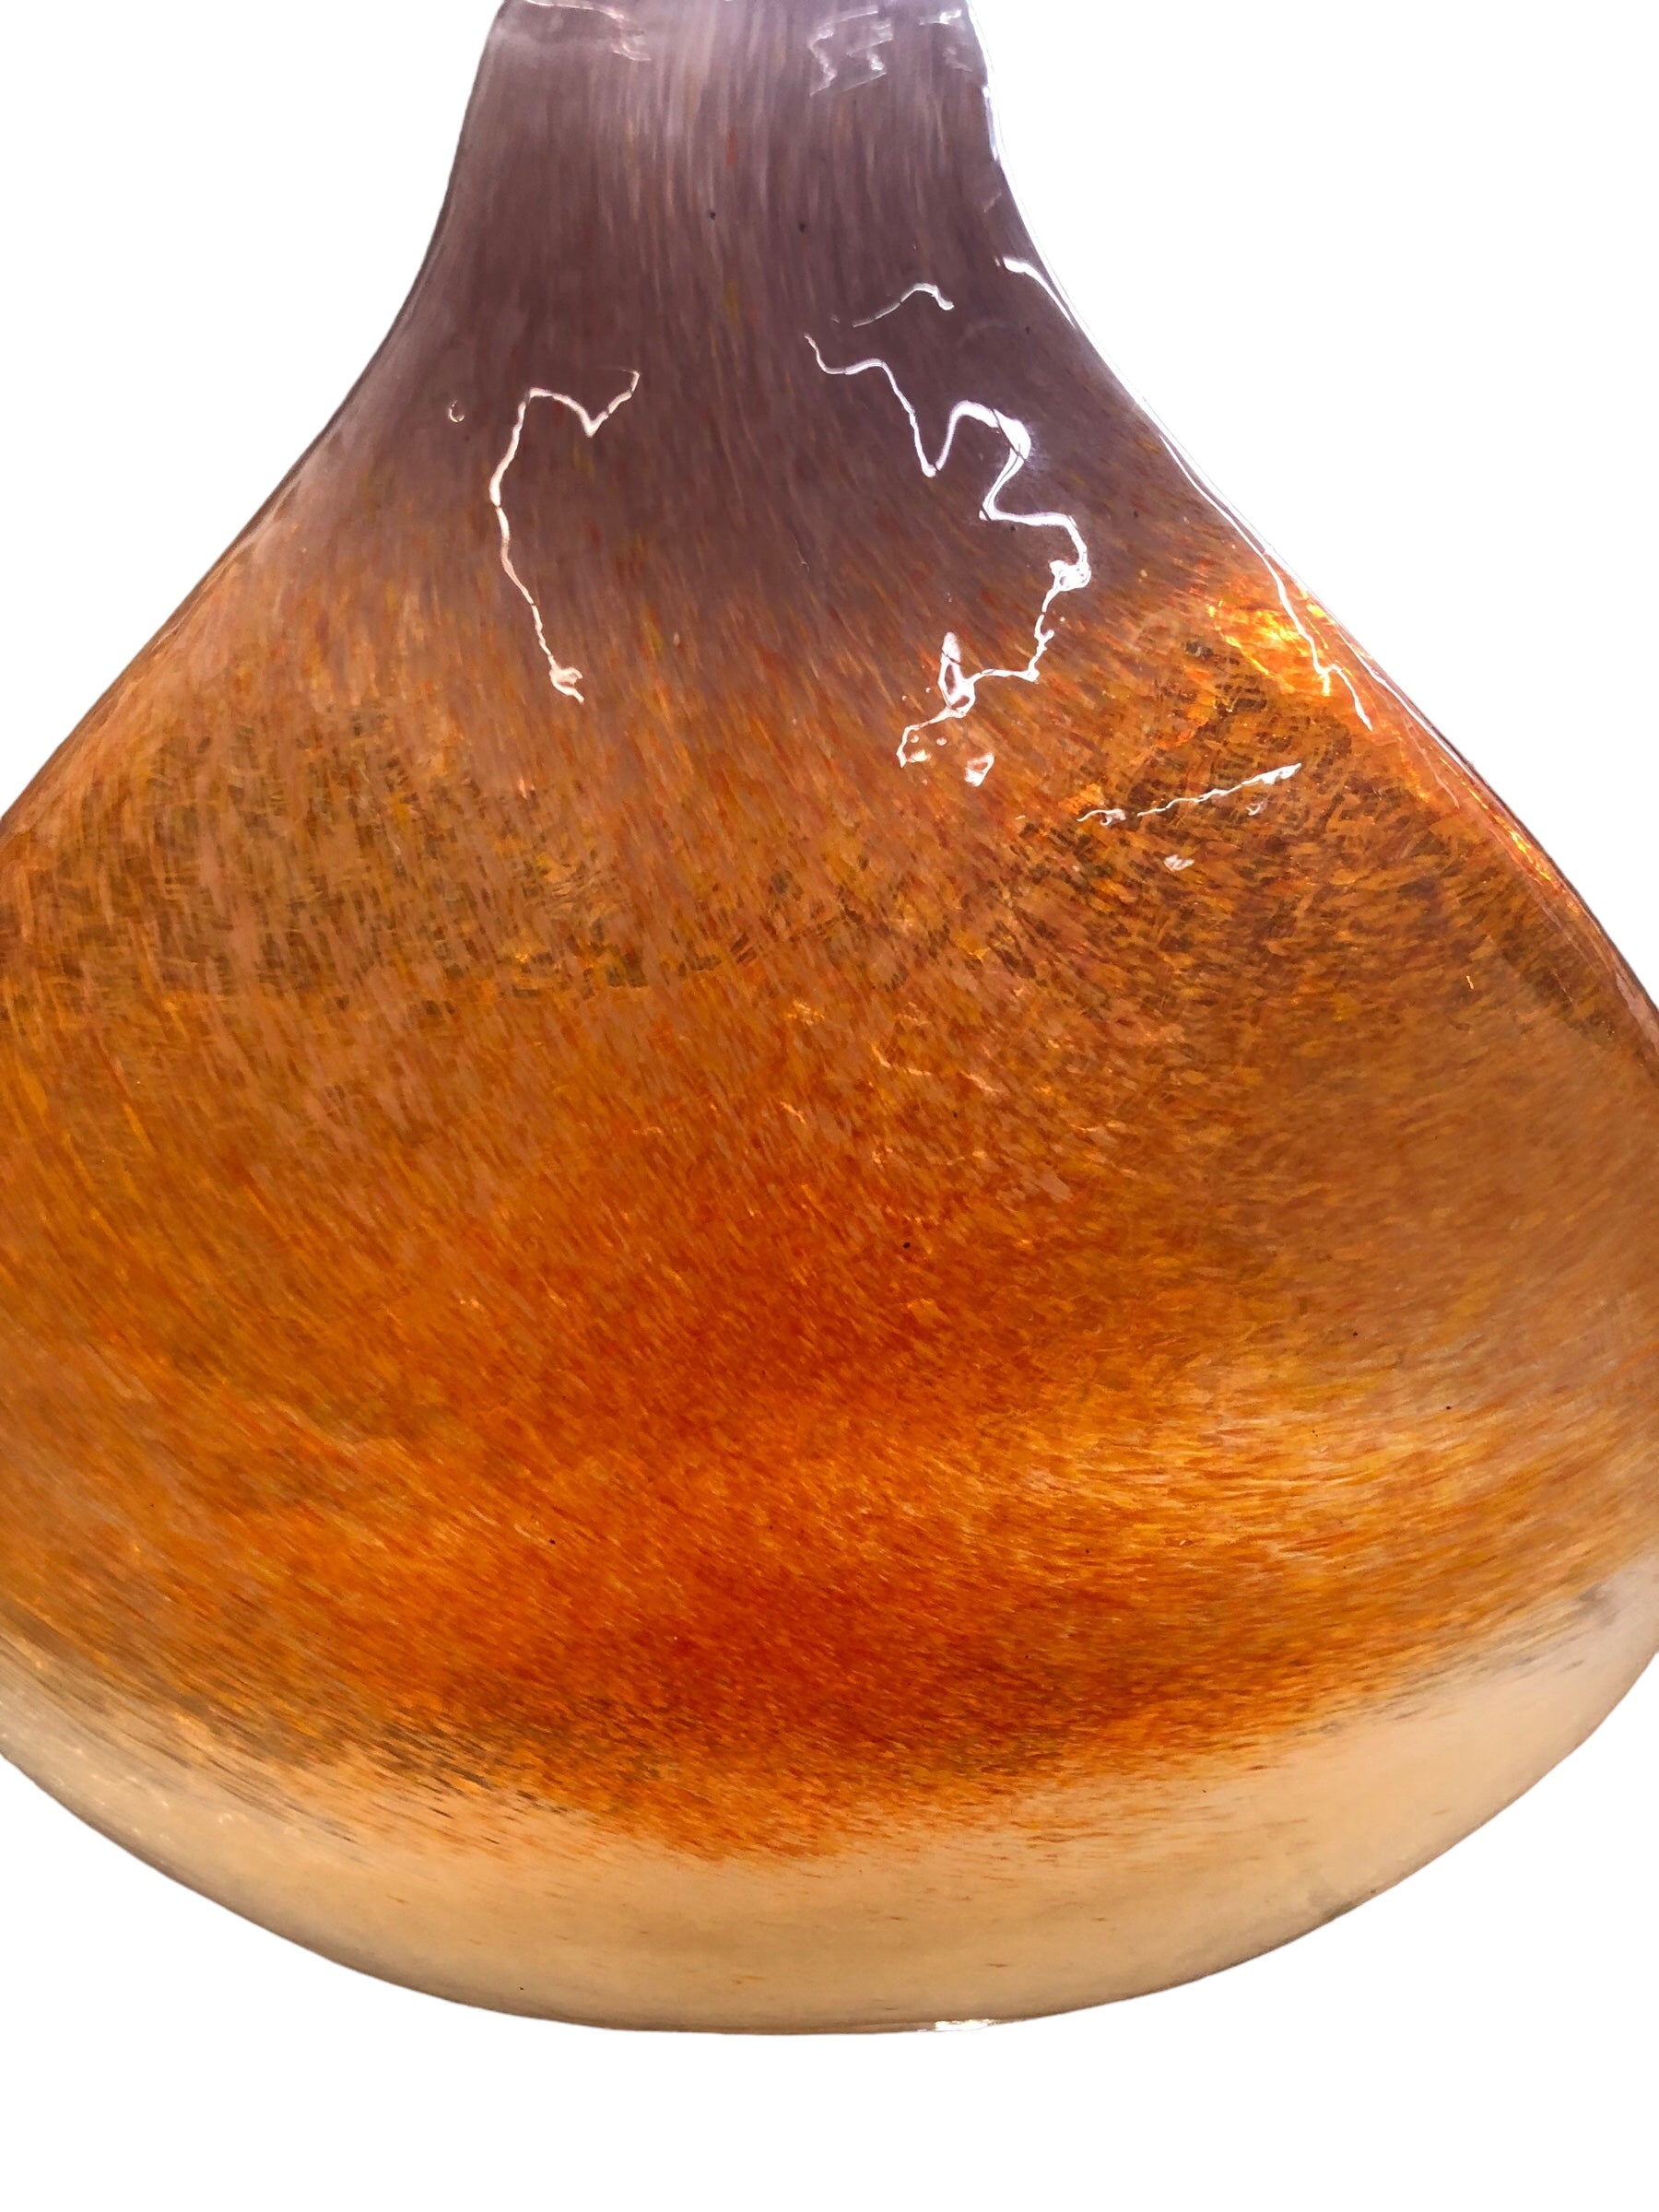 Orange /cream/ clear vase